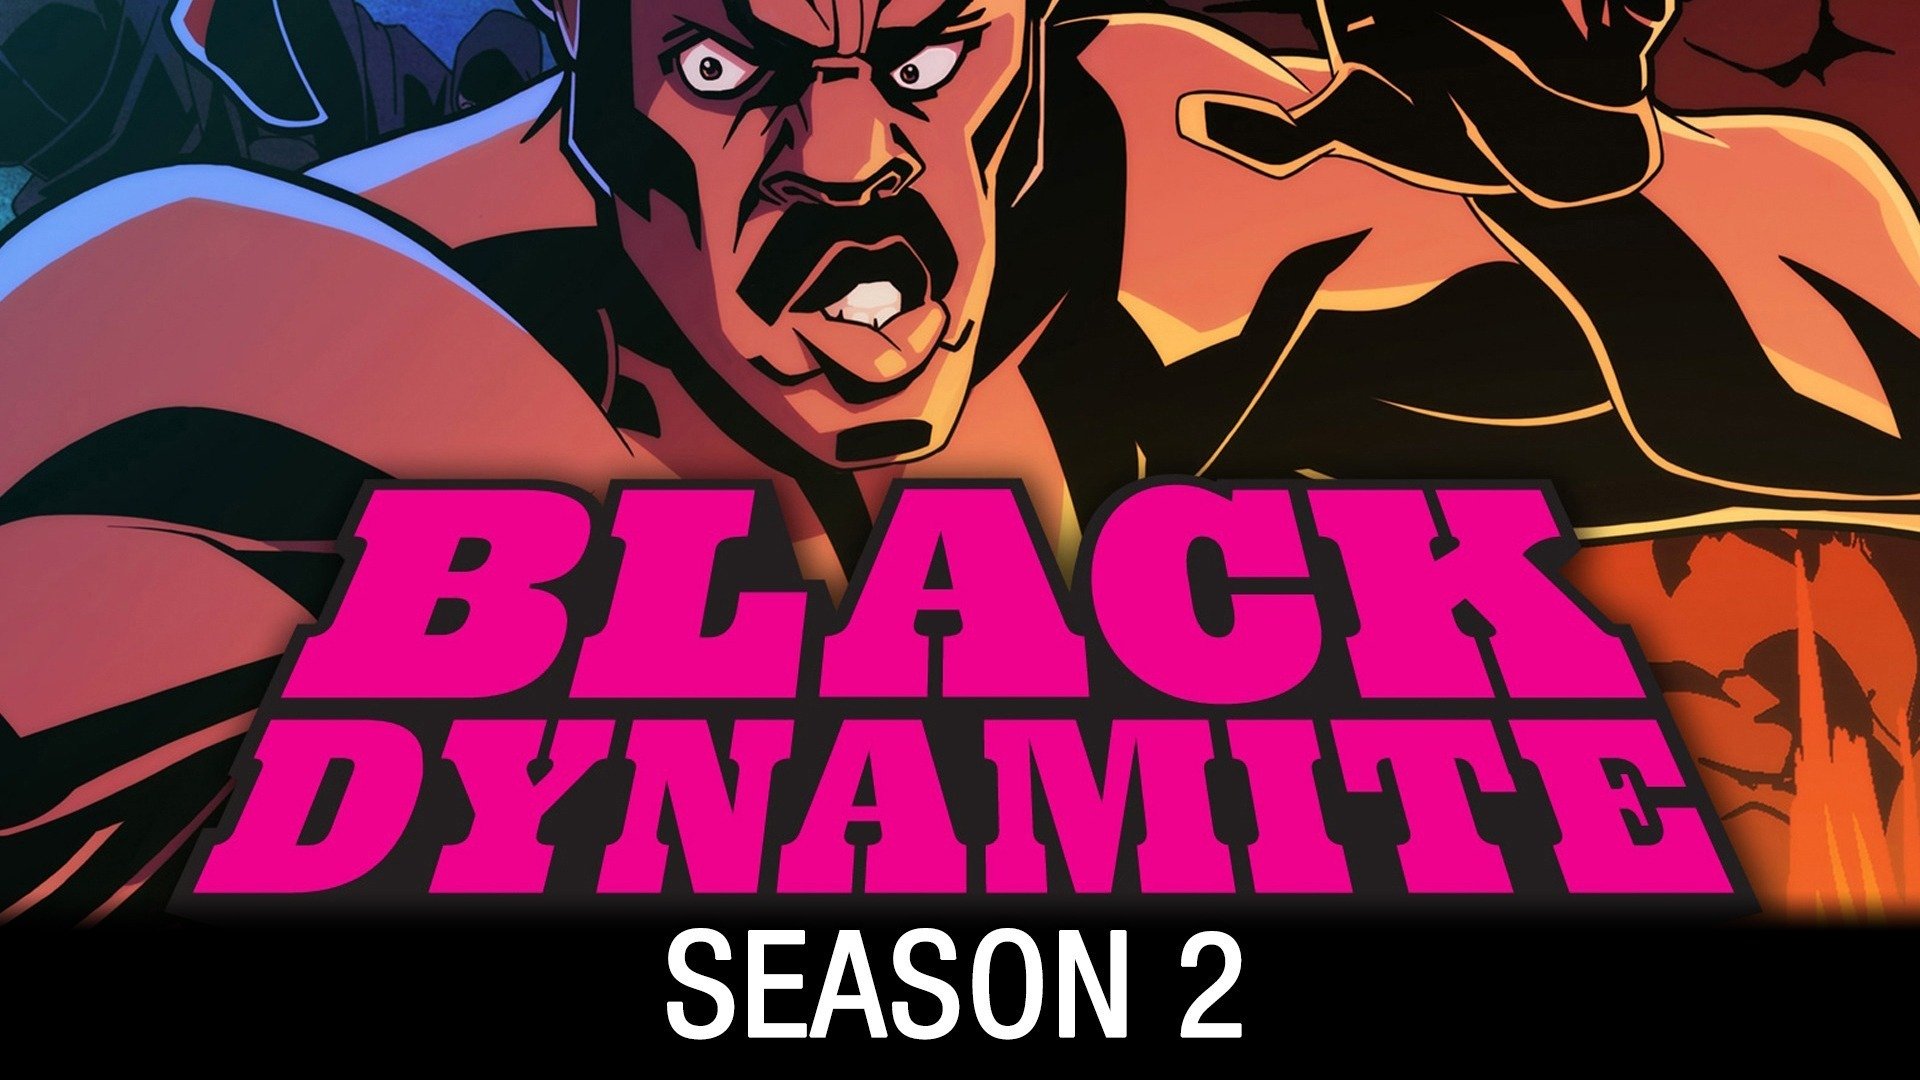 black dynamite season 1 blu ray review